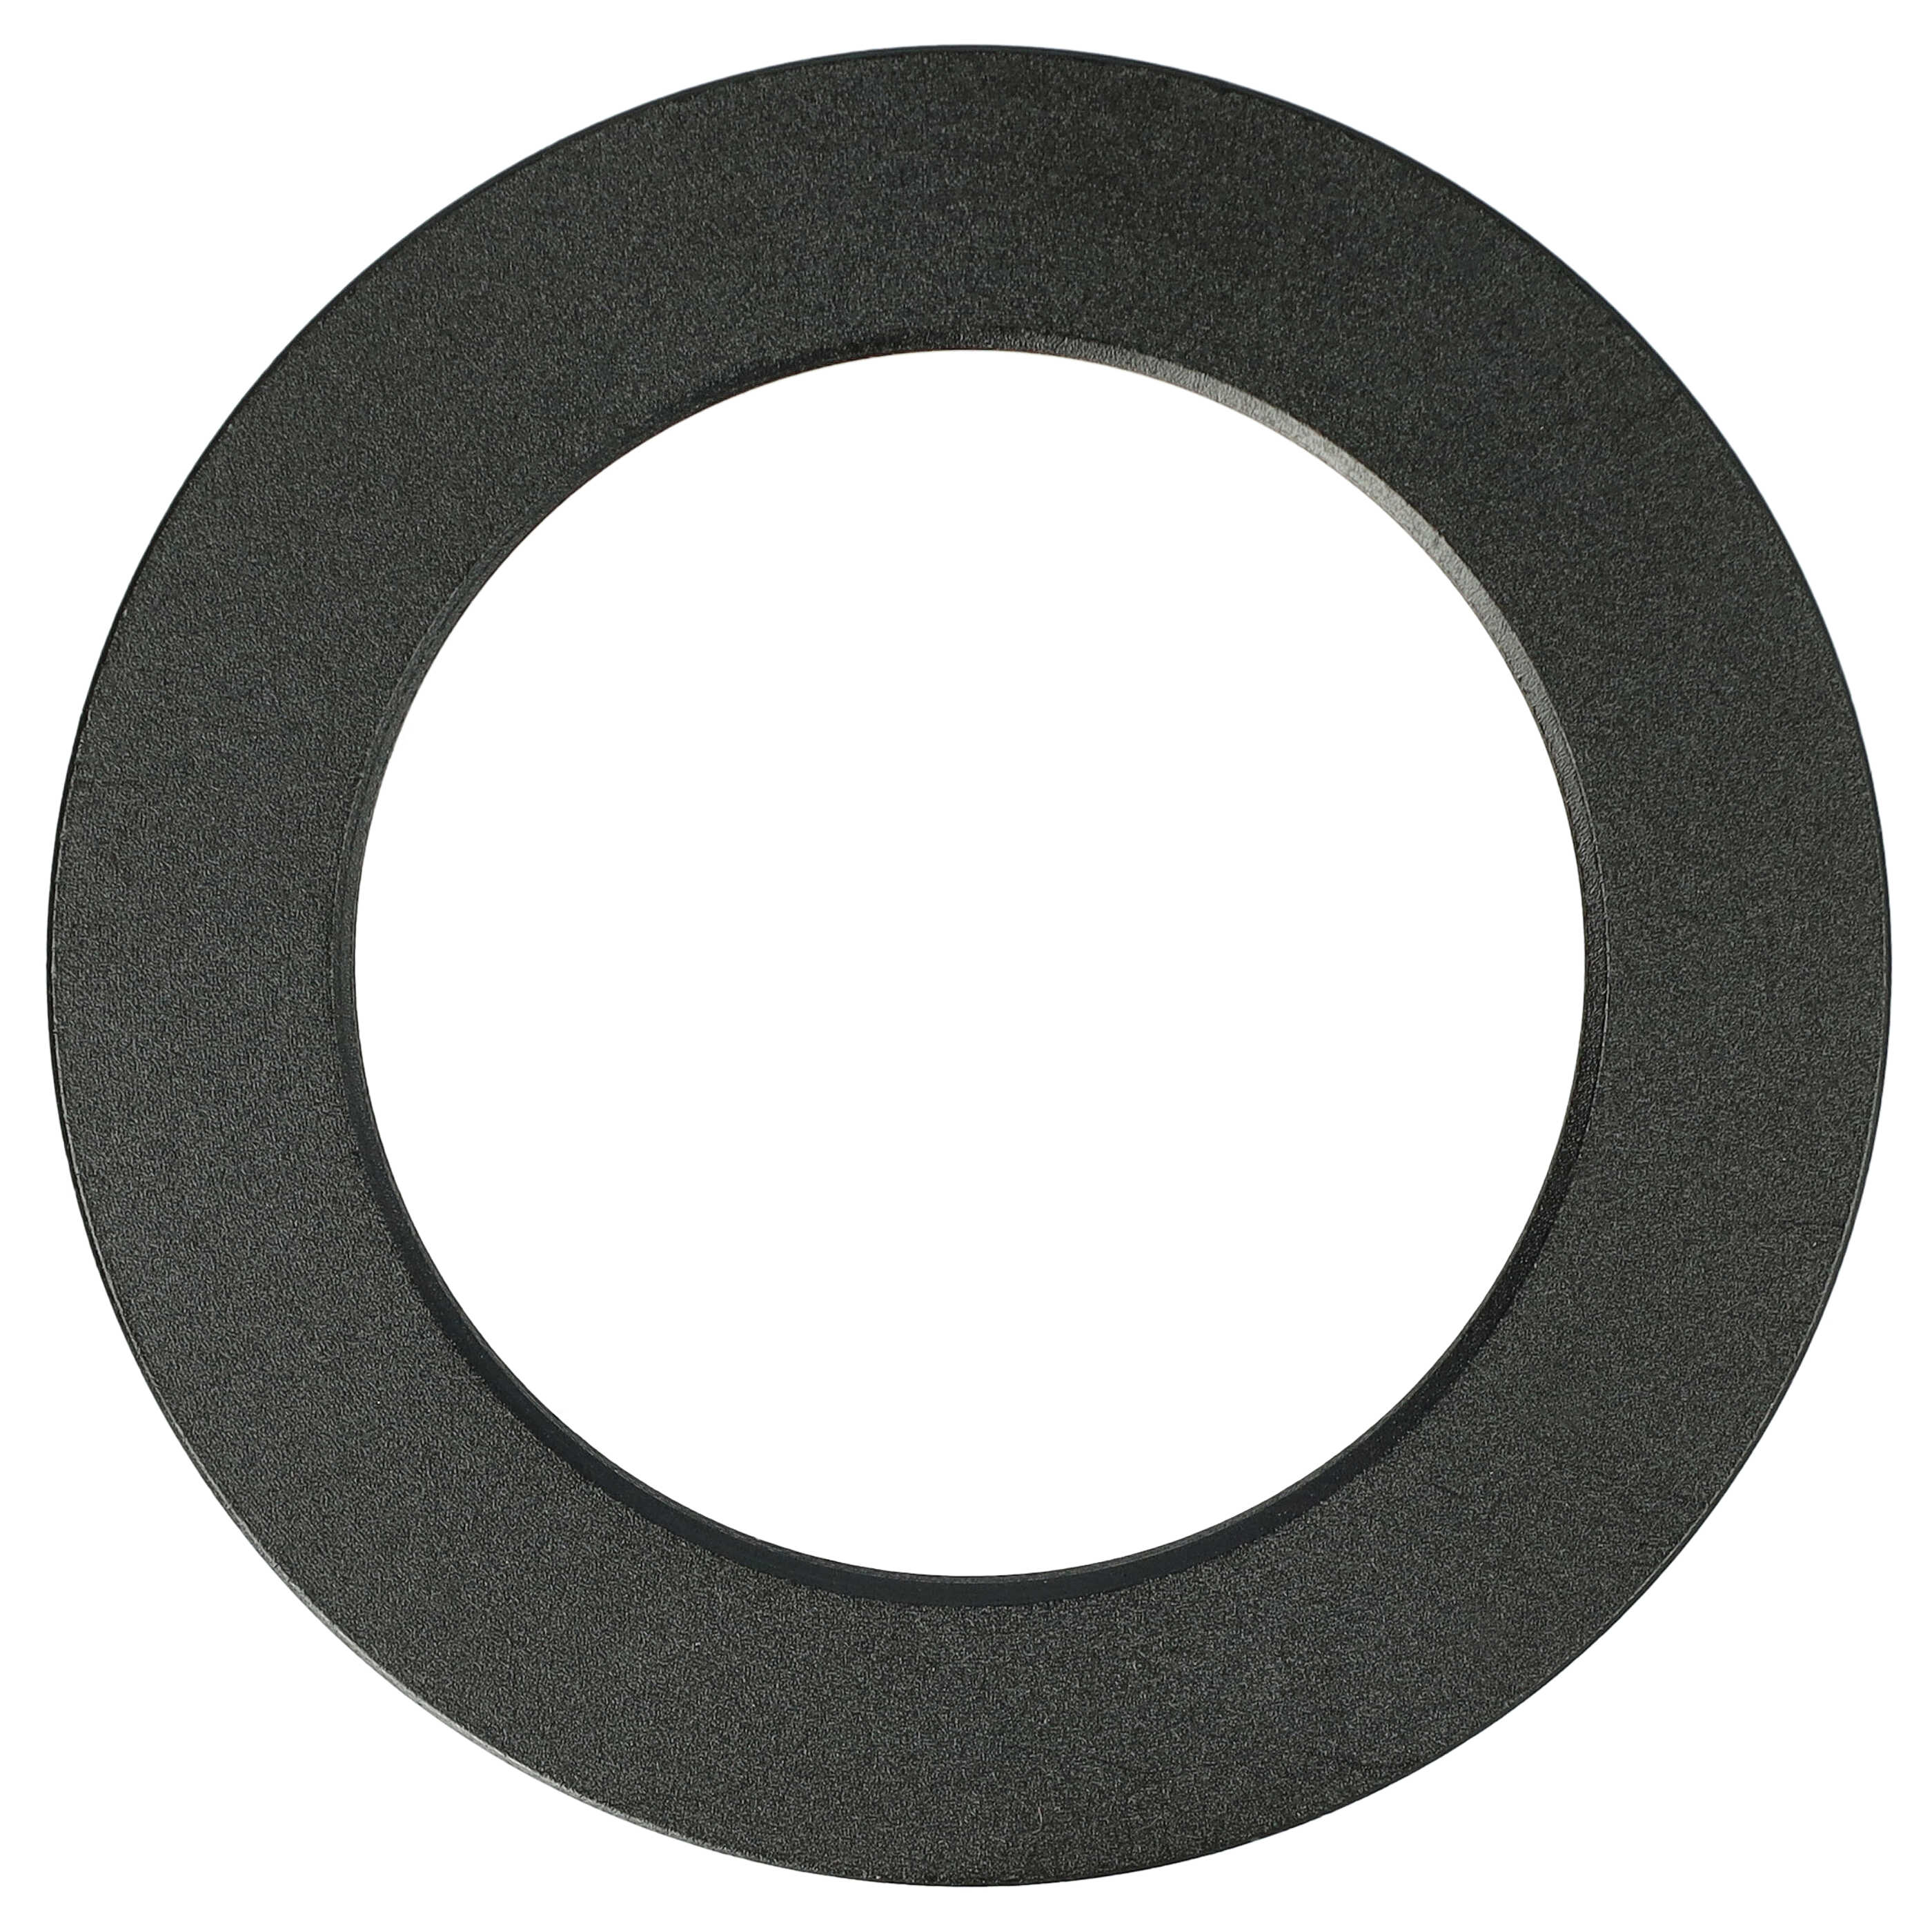 Step-Down-Ring Adapter von 52 mm auf 37 mm passend für Kamera Objektiv - Filteradapter, Metall, schwarz